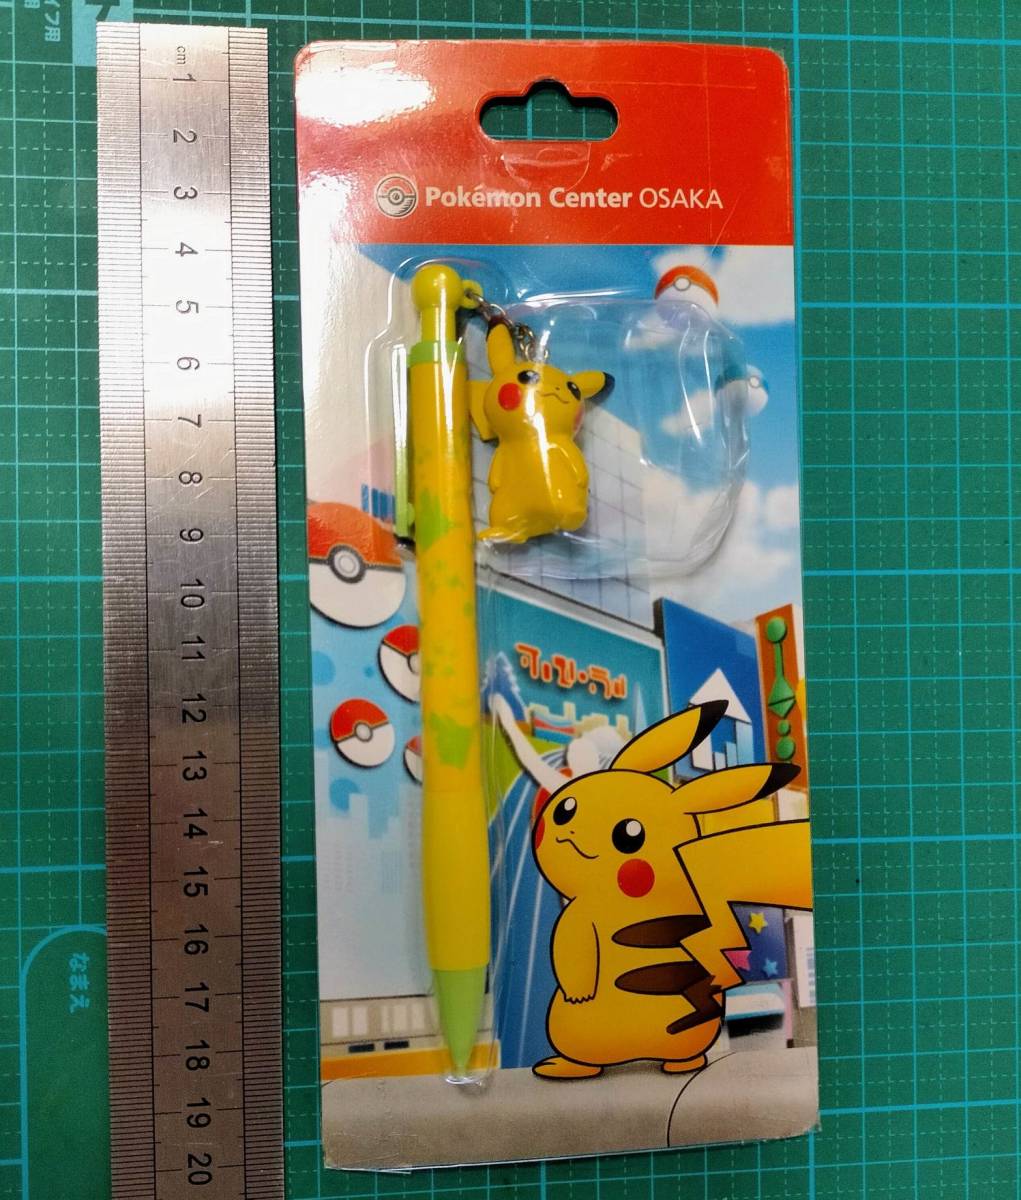 ポケモン センター 大阪 限定 ピカチュウ シャープペンシル ボールペン Pokemon Center Osaka Pikachu mechanical pencil ballpoint pen